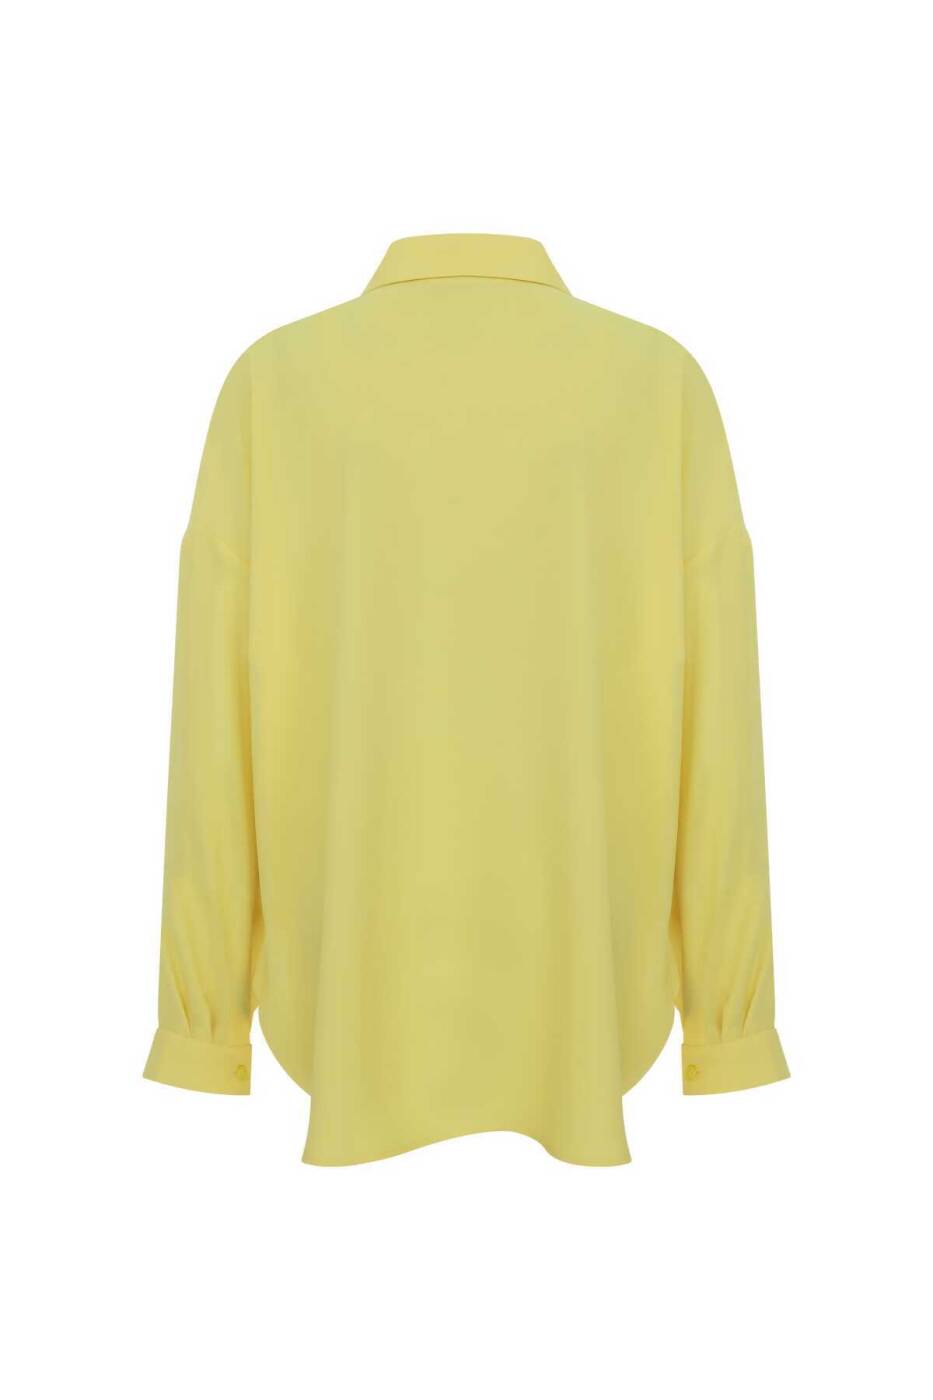  Bağlama Detaylı Krep Gömlek Sarı - 5